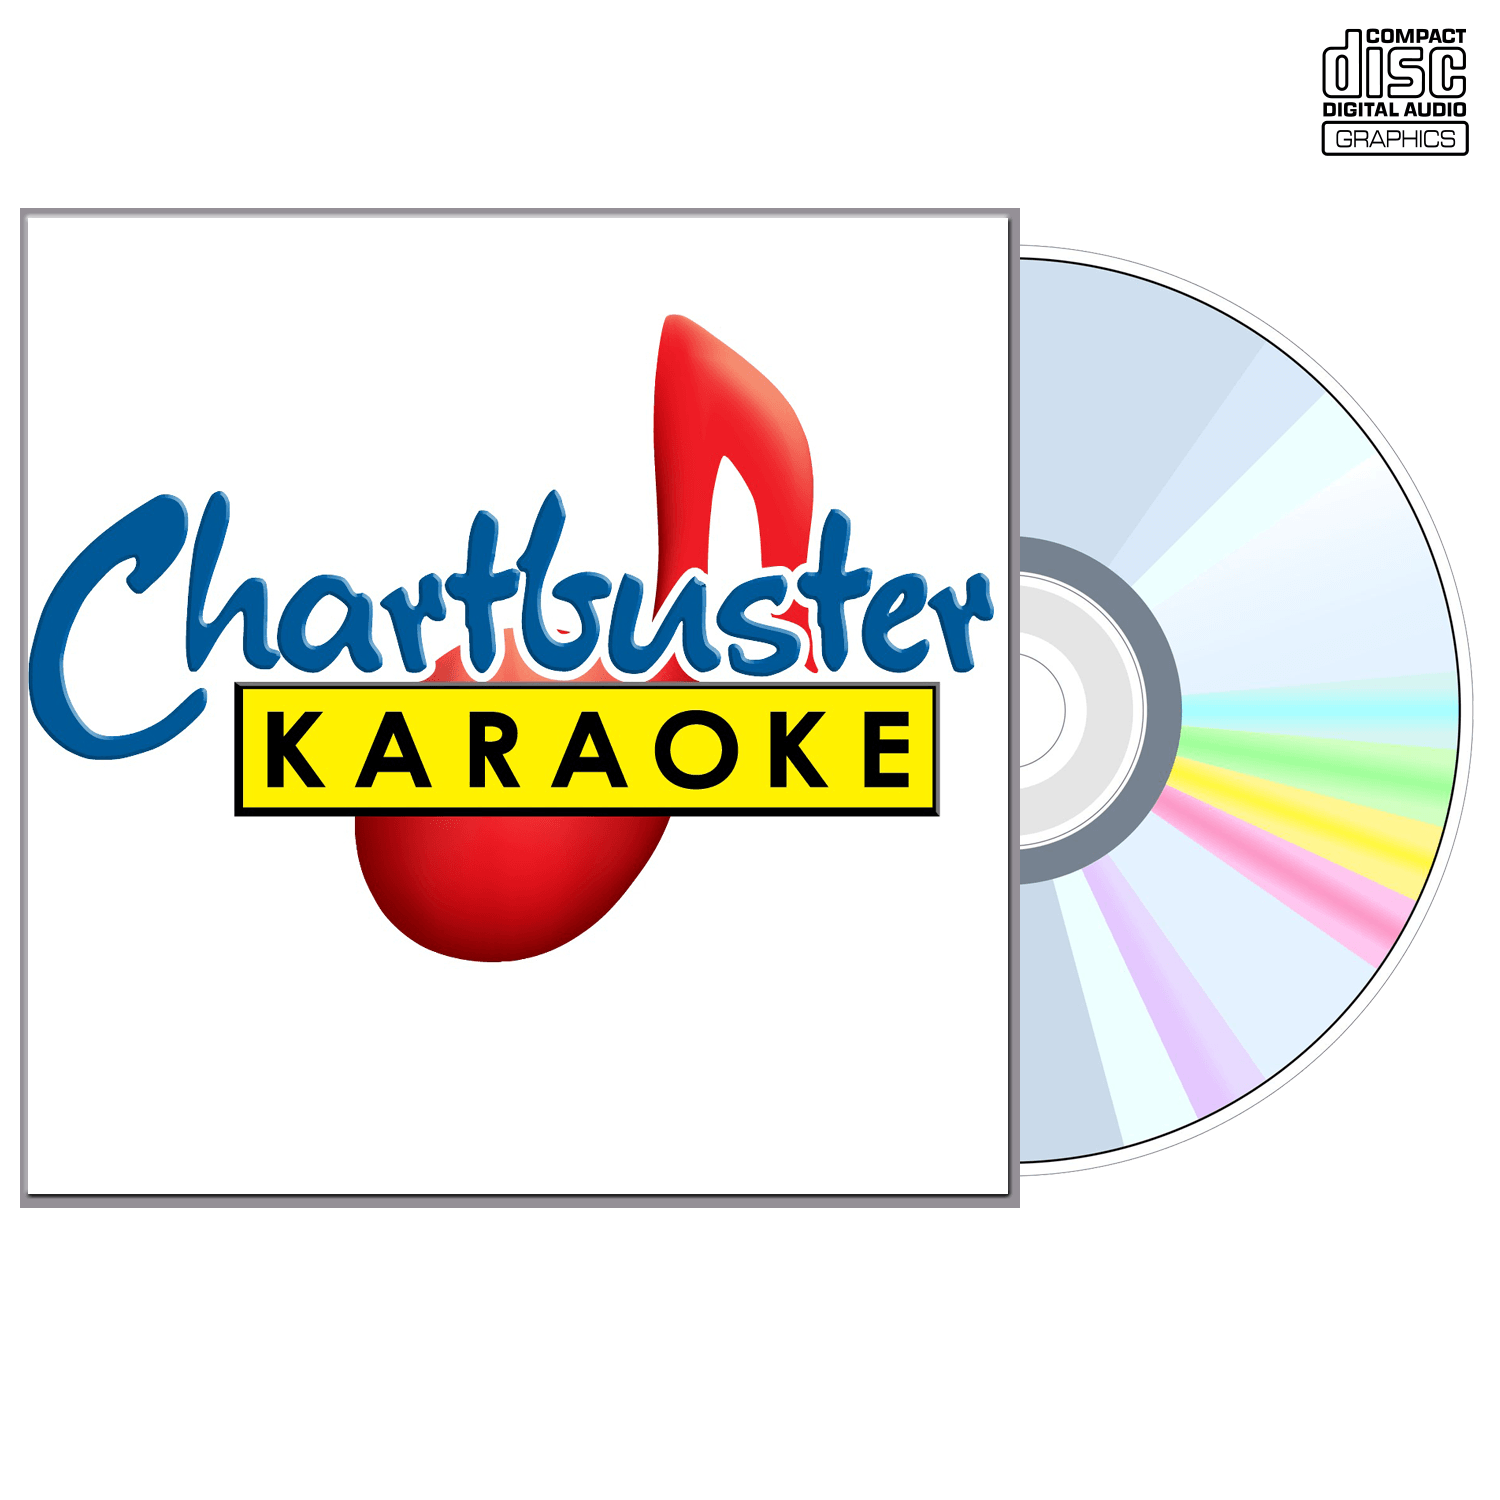 Trace Adkins Vol 2 - CD+G - Chartbuster Karaoke - Karaoke Home Entertainment